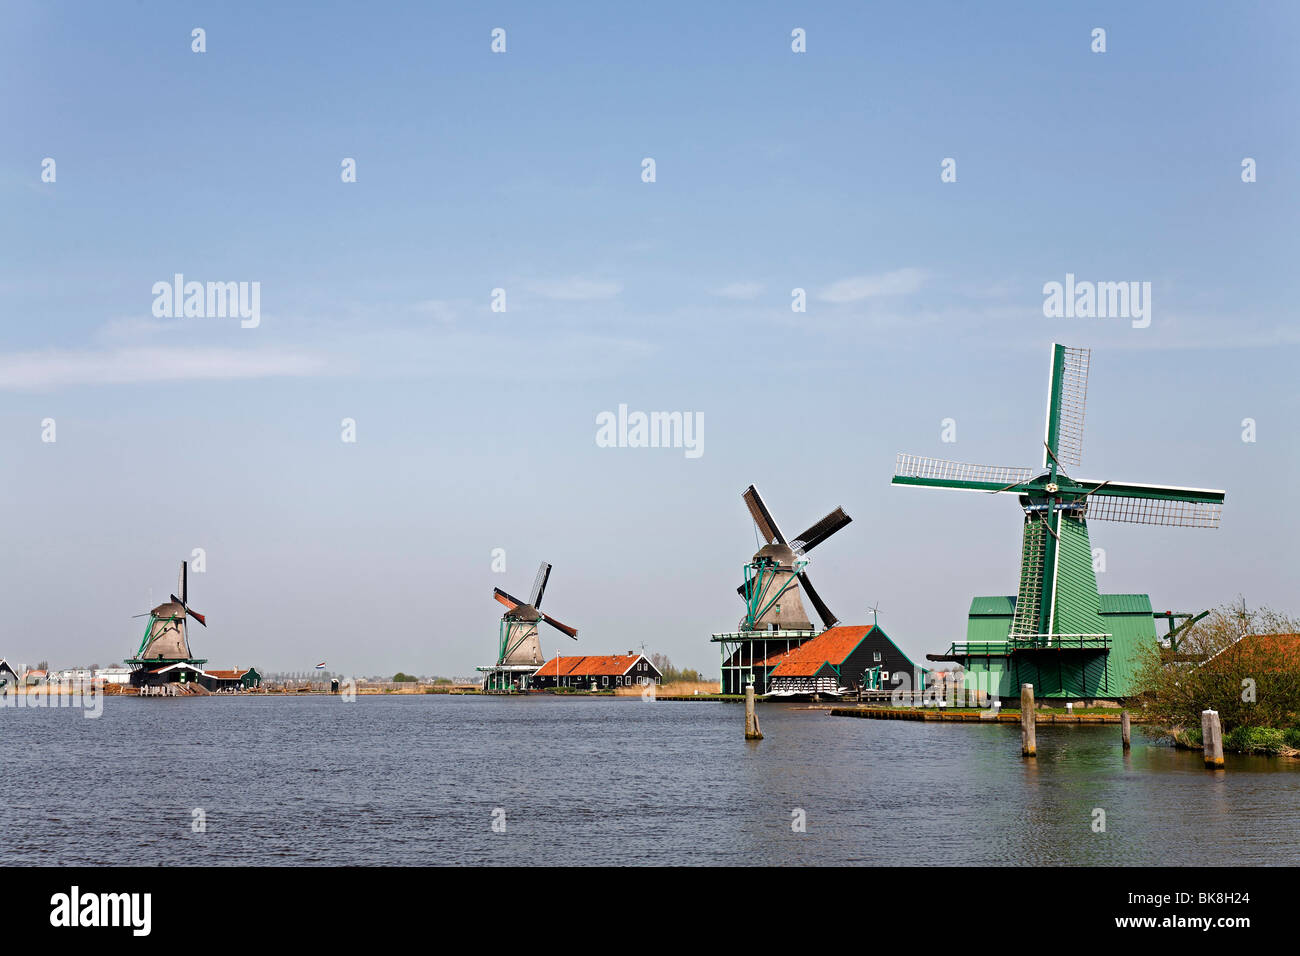 Molinos de viento históricos en el río Zaan, museo al aire libre Zaanse Schans, Zaanstad, provincia de Holanda Septentrional, Holanda, Europa Foto de stock